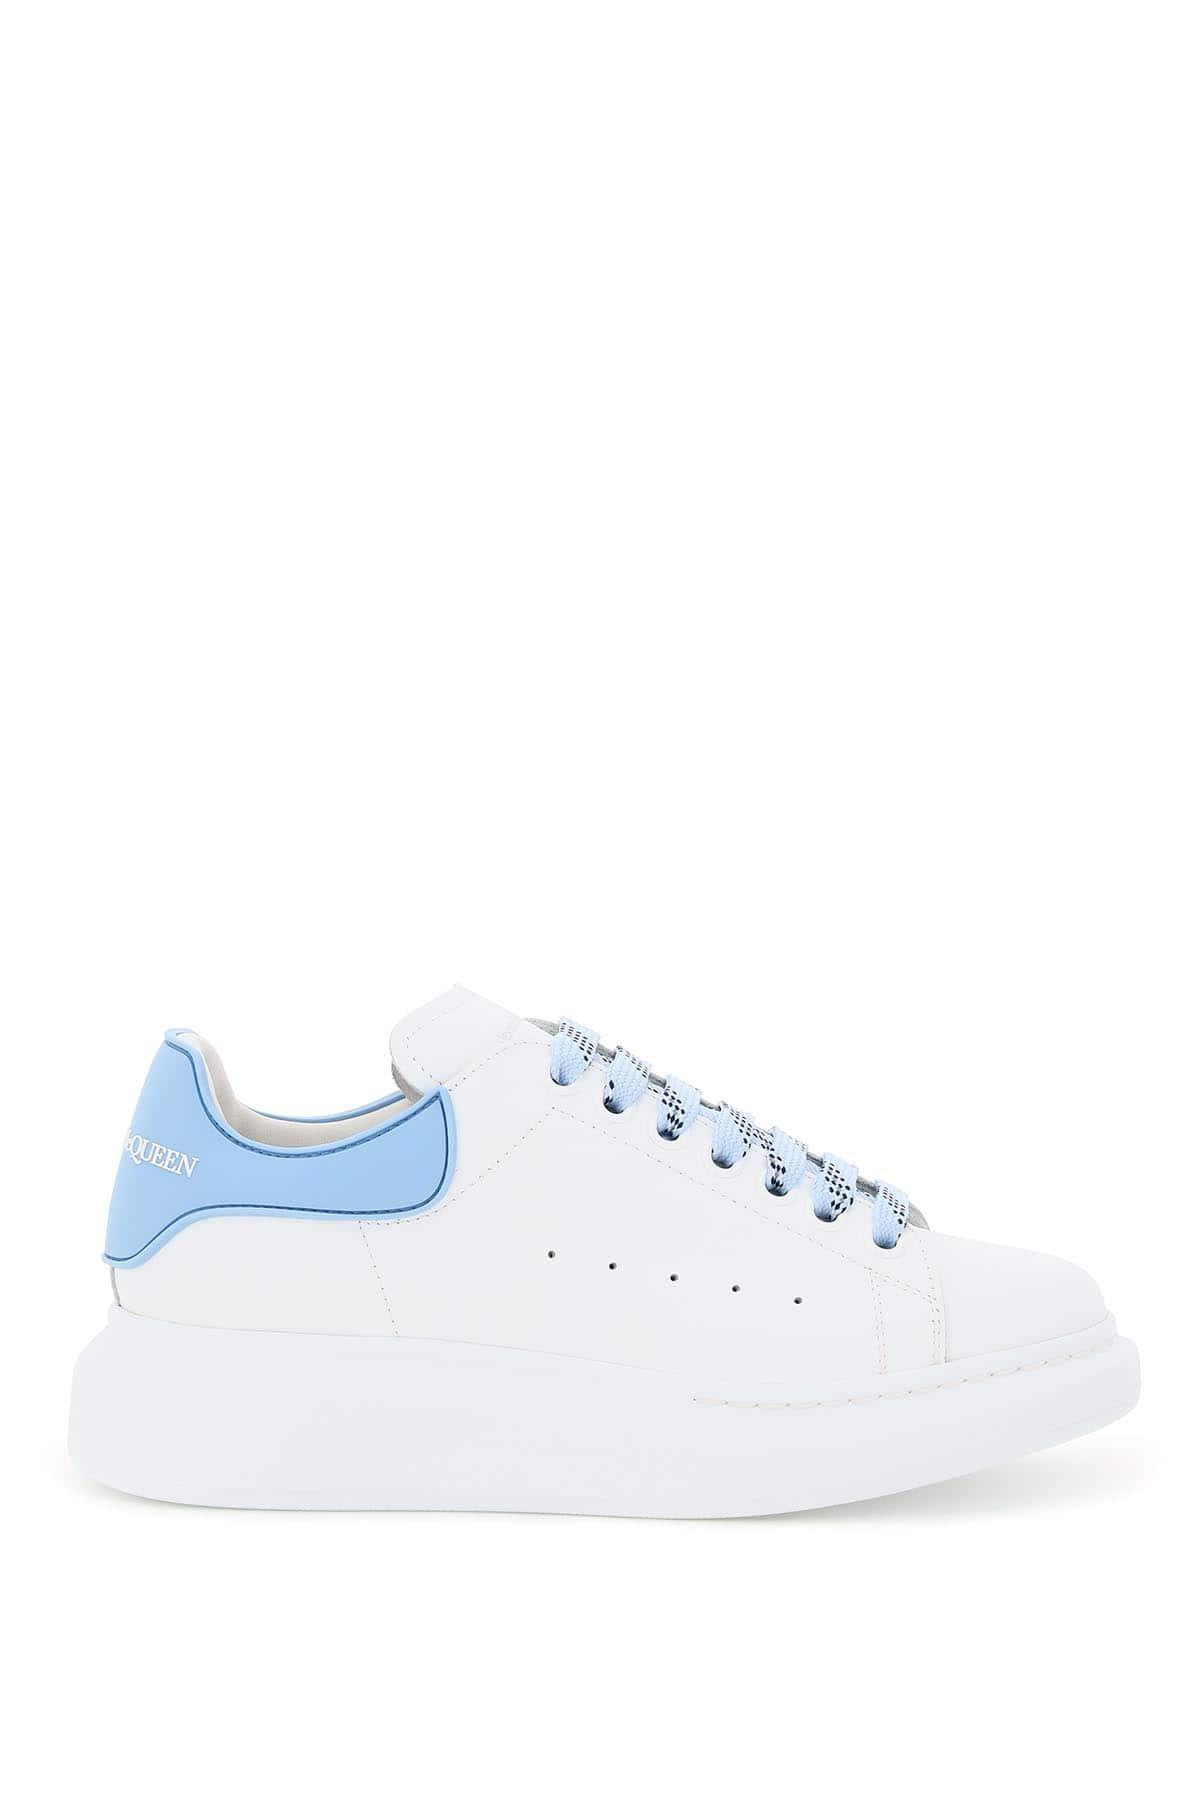 Alexander McQueen Oversize Sole Rubber Heel Sneakers in Blue | Lyst